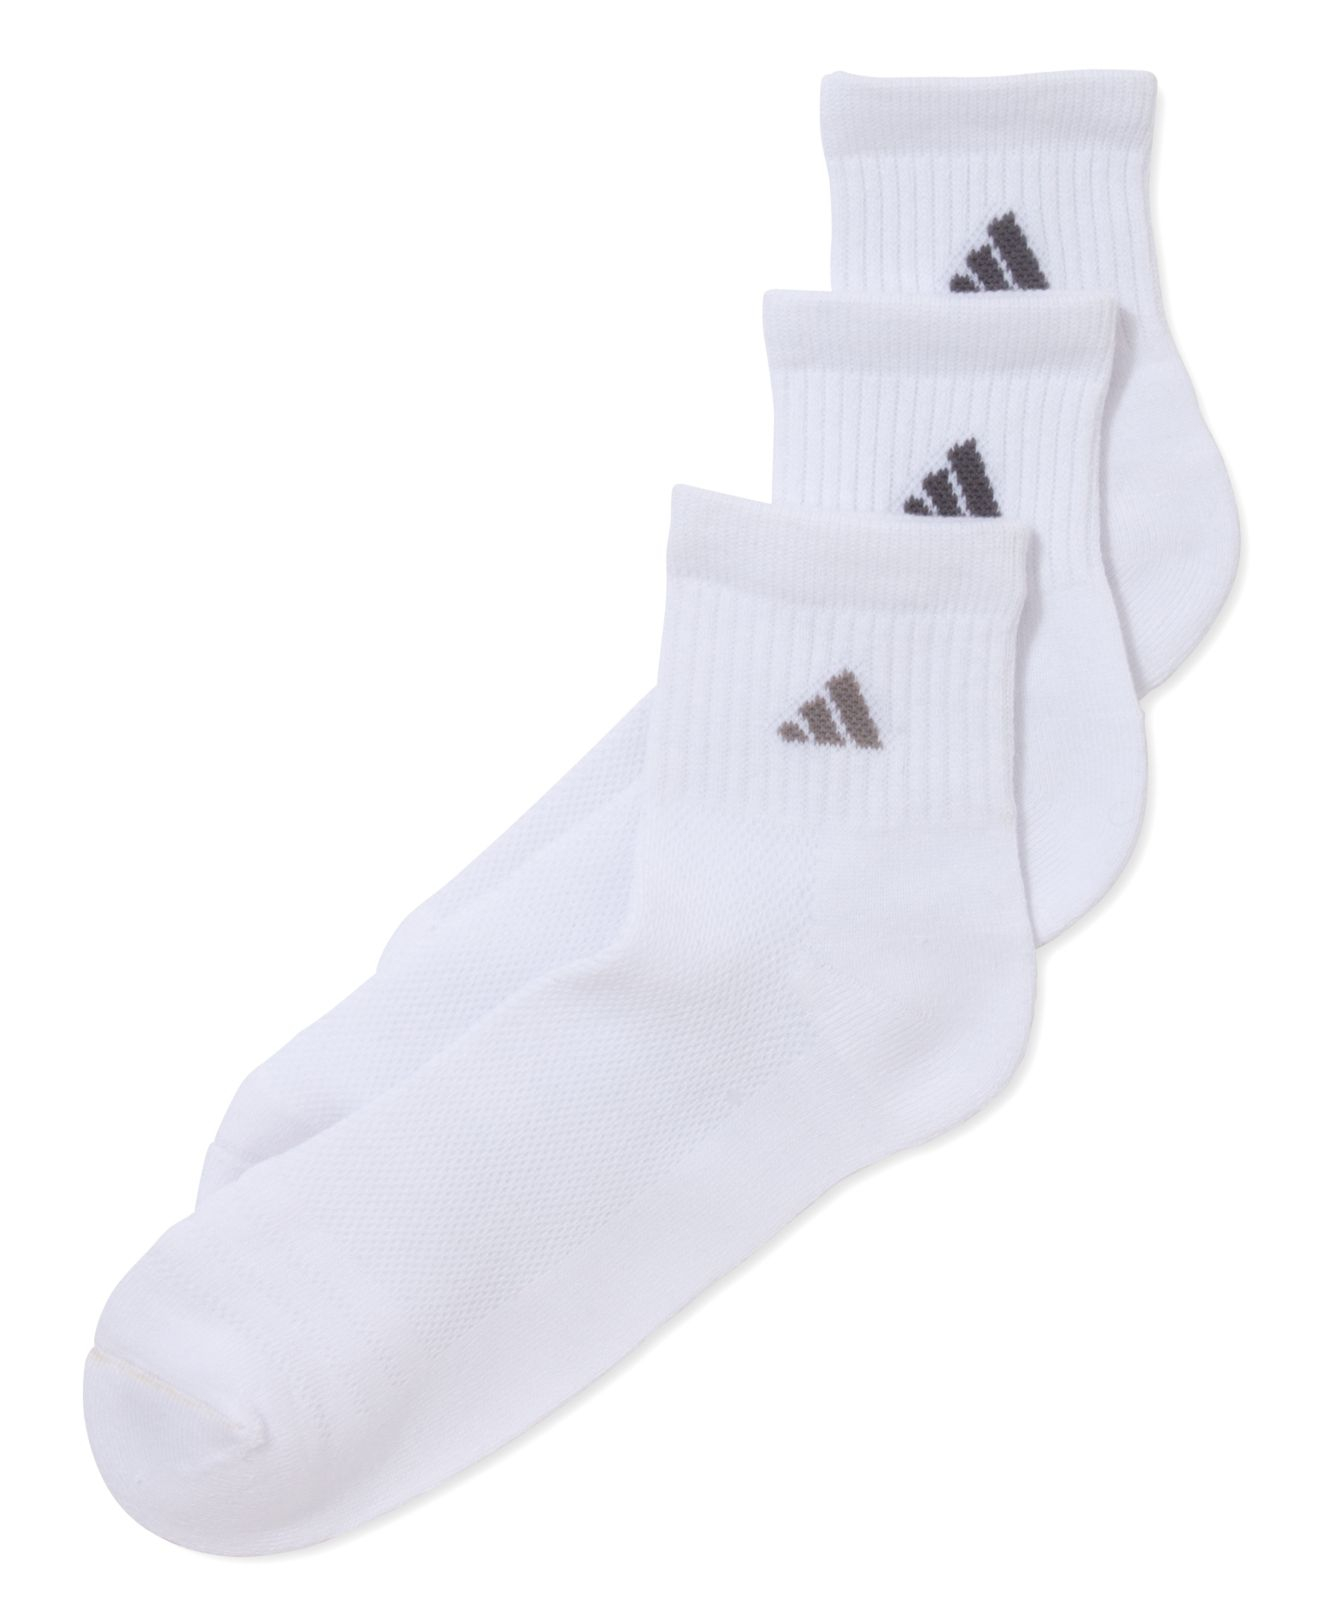 Lyst - Adidas Men'S Climacool Superlite Quarter-Length Socks 3-Pack in ...